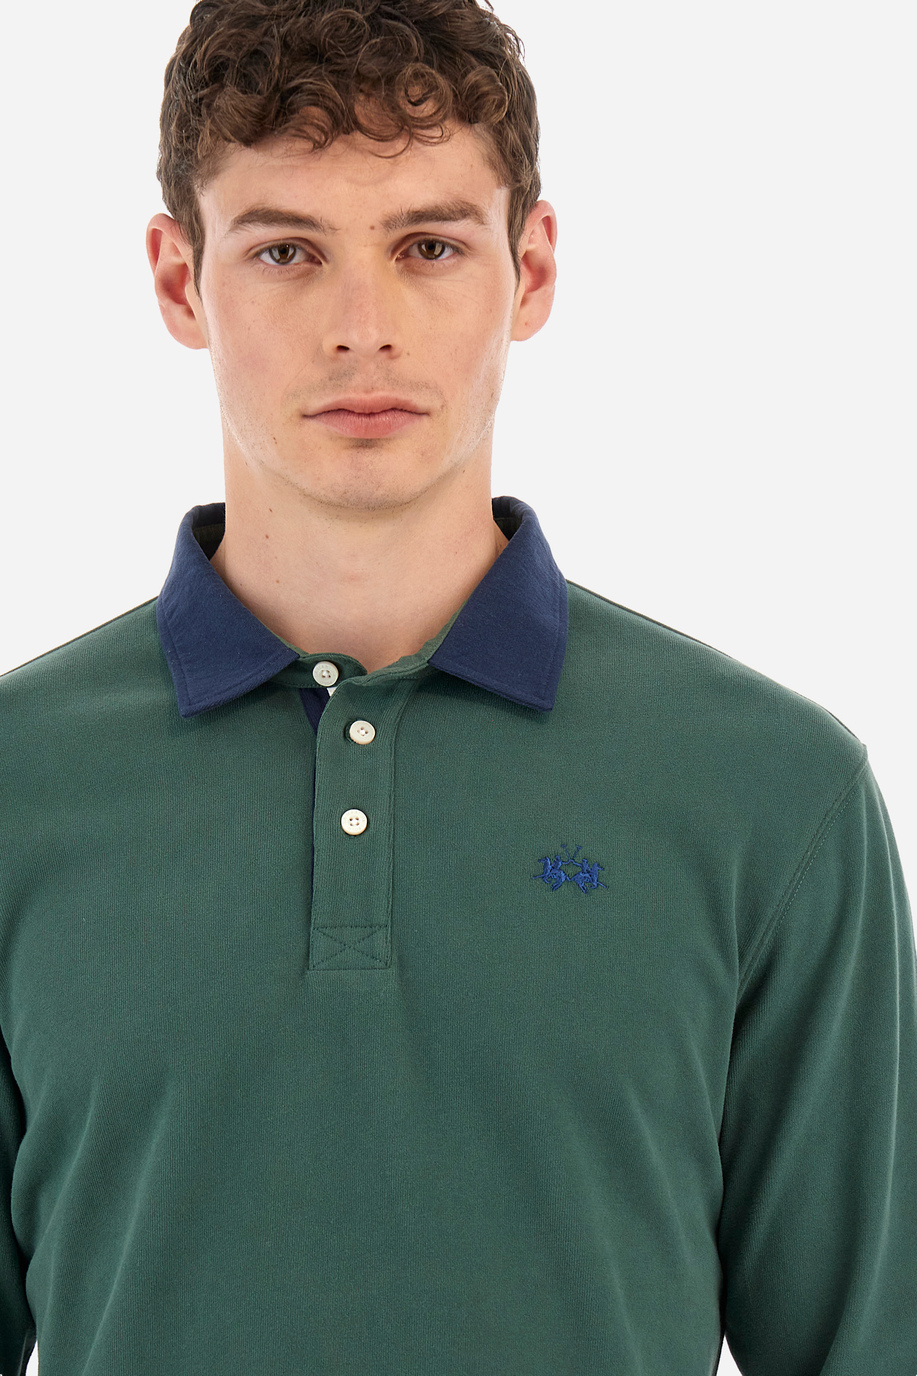 Herren -Poloshirt regular fit - Waller - Poloshirts | La Martina - Official Online Shop